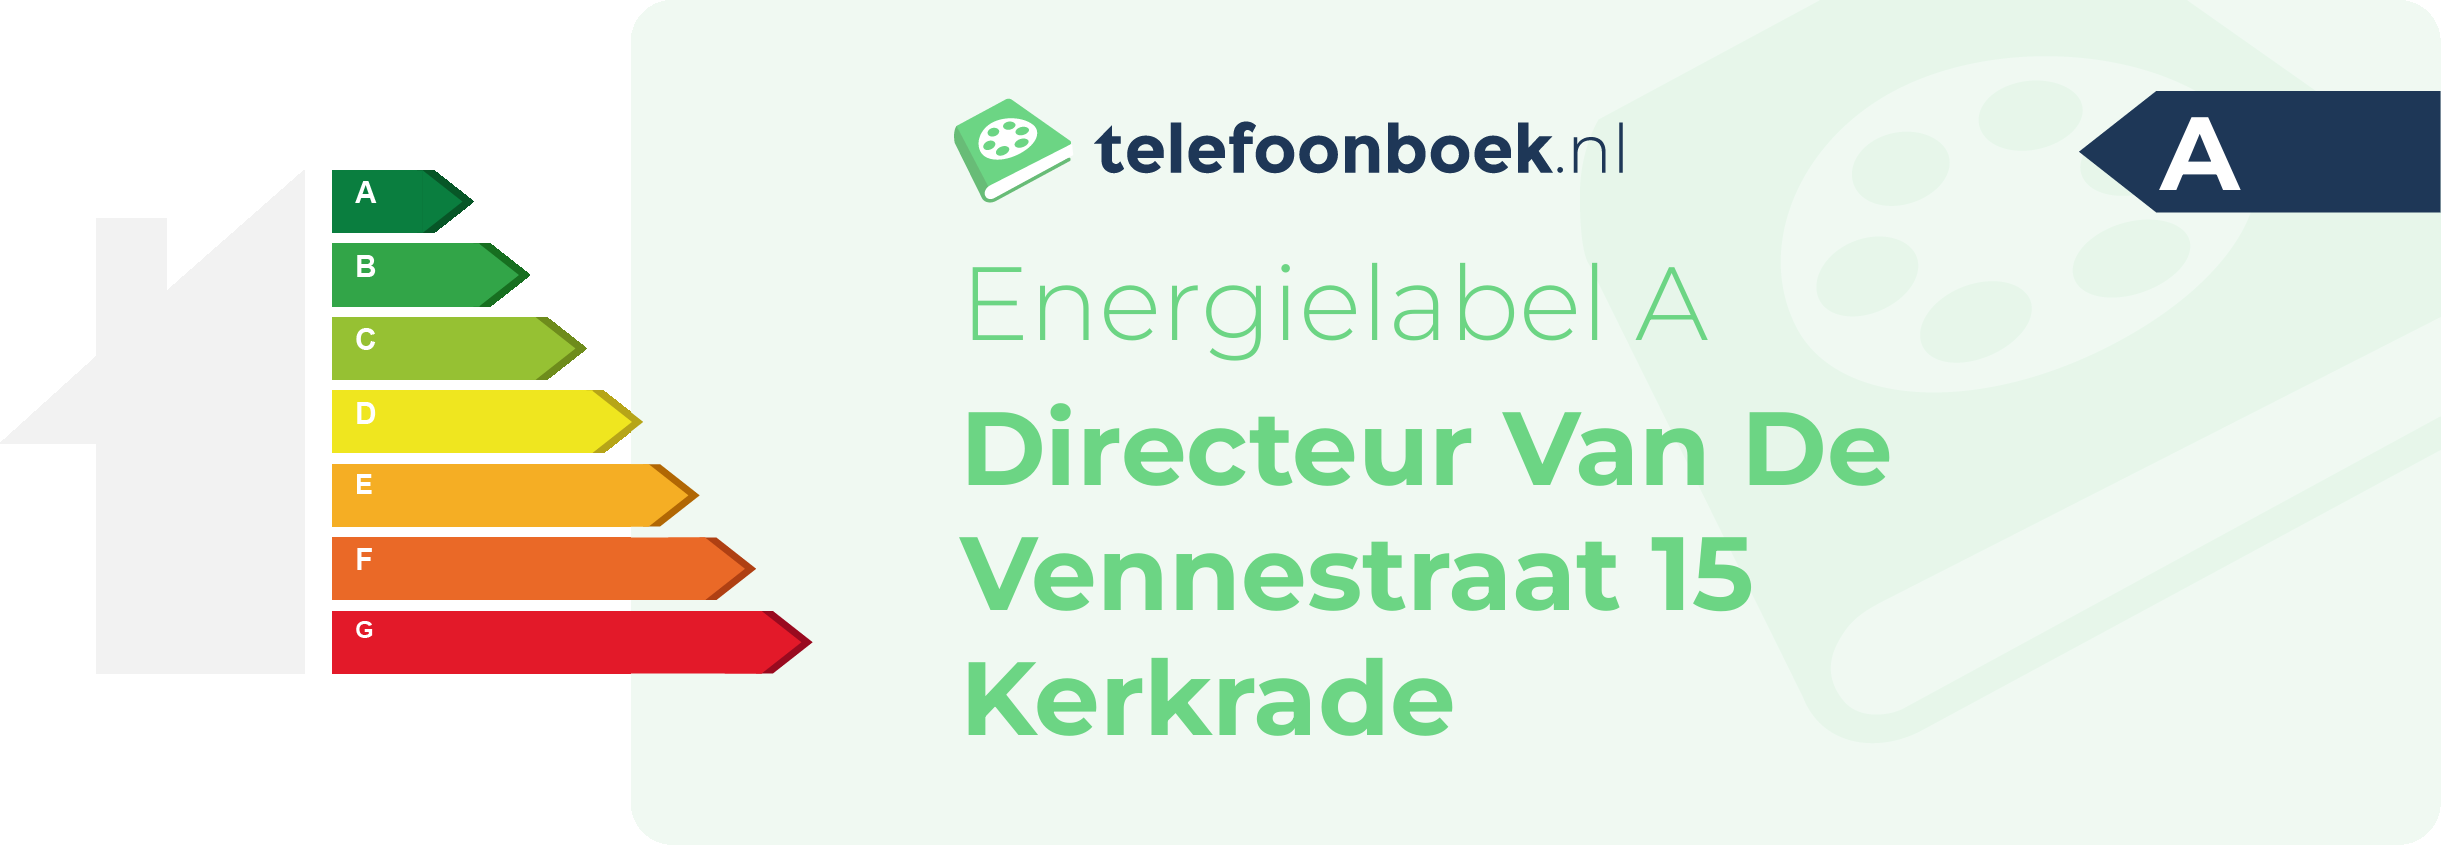 Energielabel Directeur Van De Vennestraat 15 Kerkrade